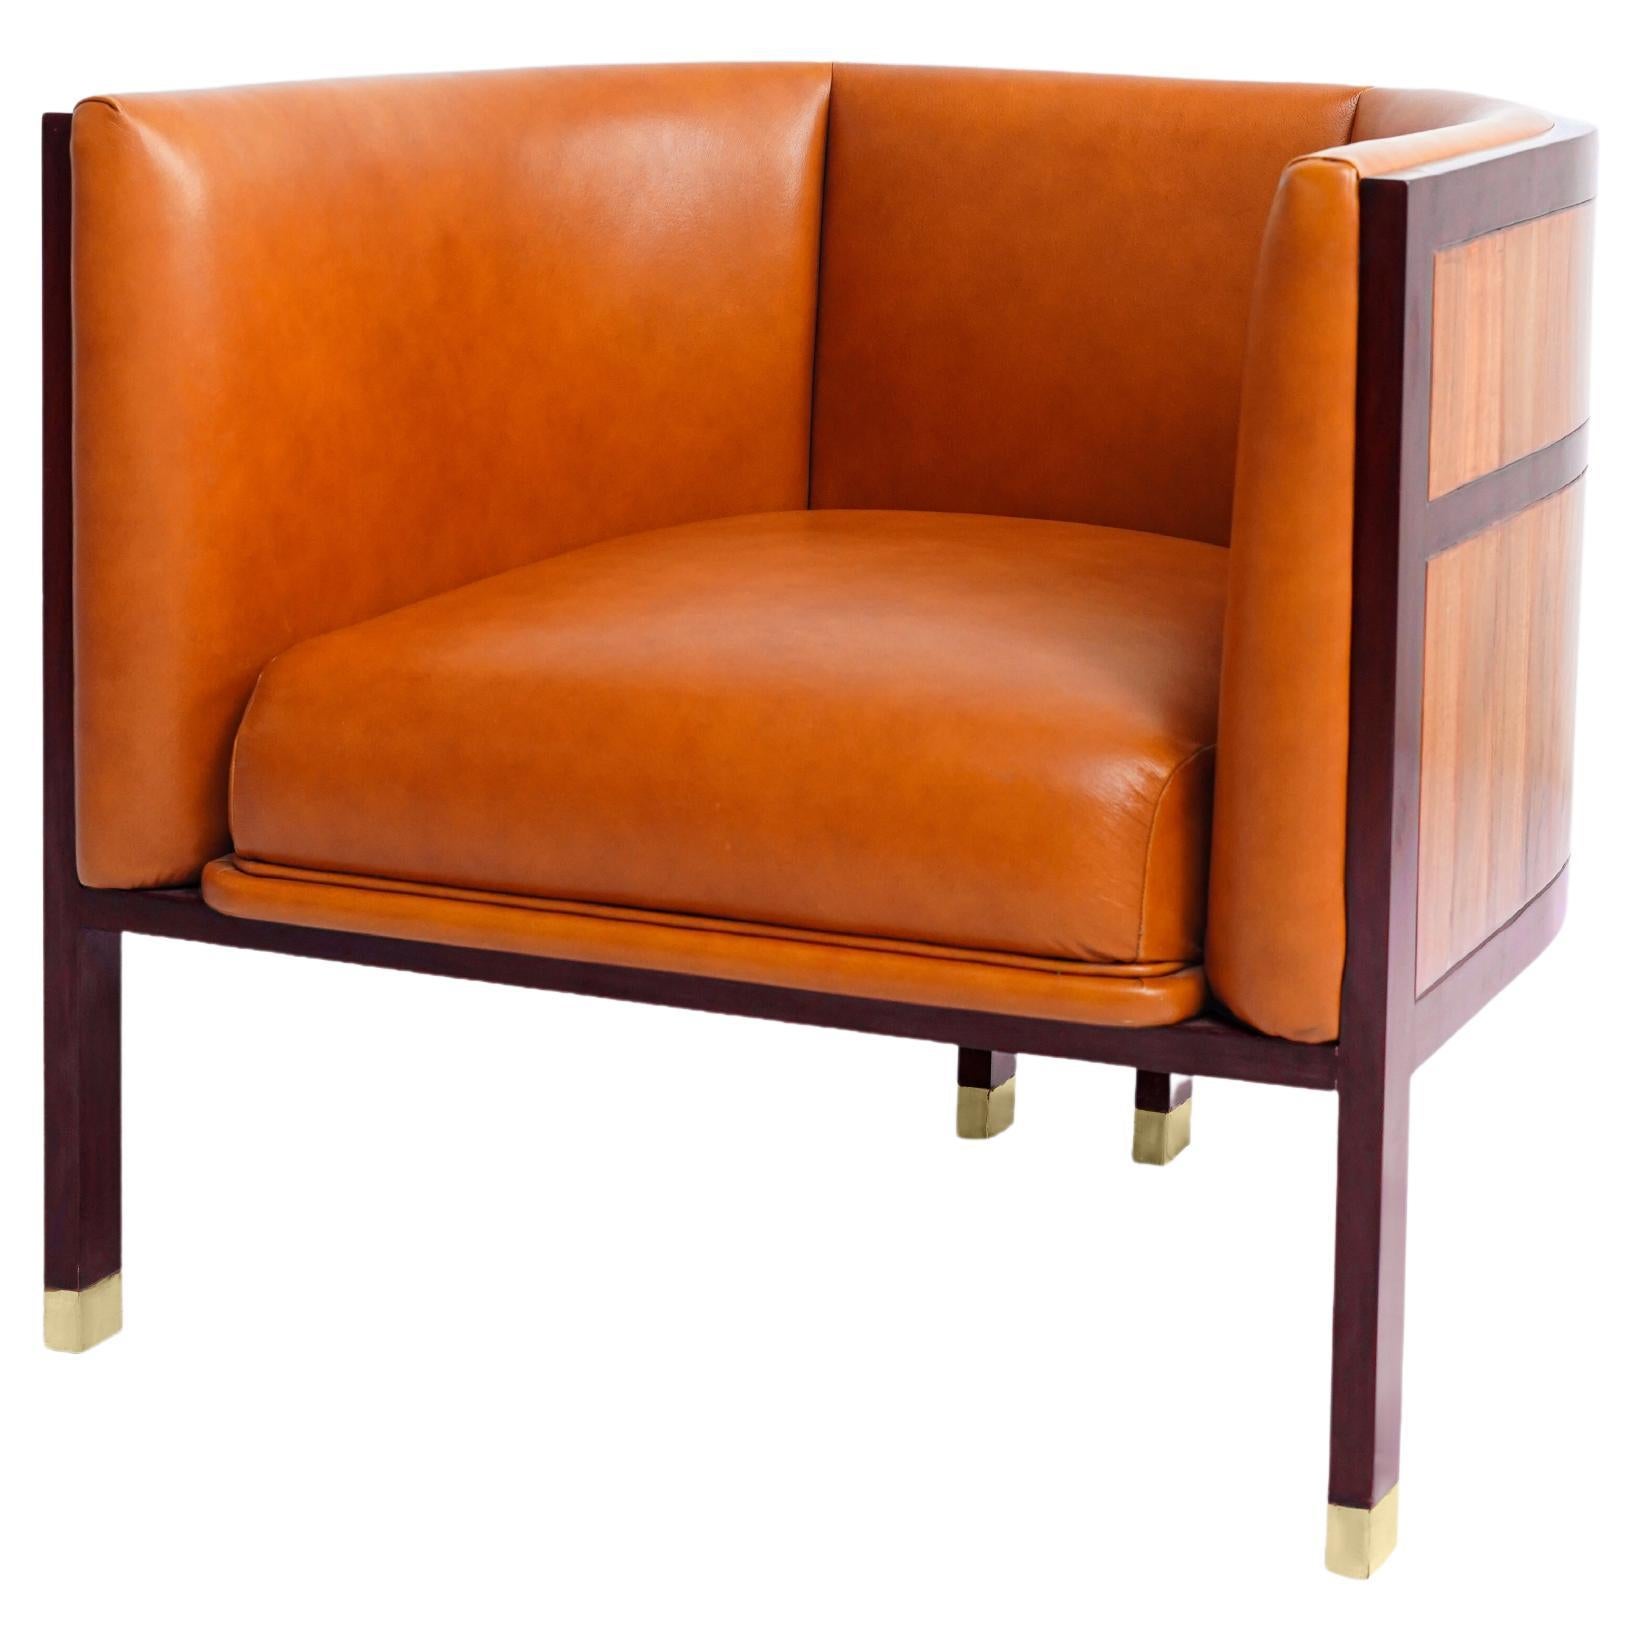 Original-Loungesessel, Barrel Chair, runder Rückenlehne, kühn, modern, Nussbaumholz